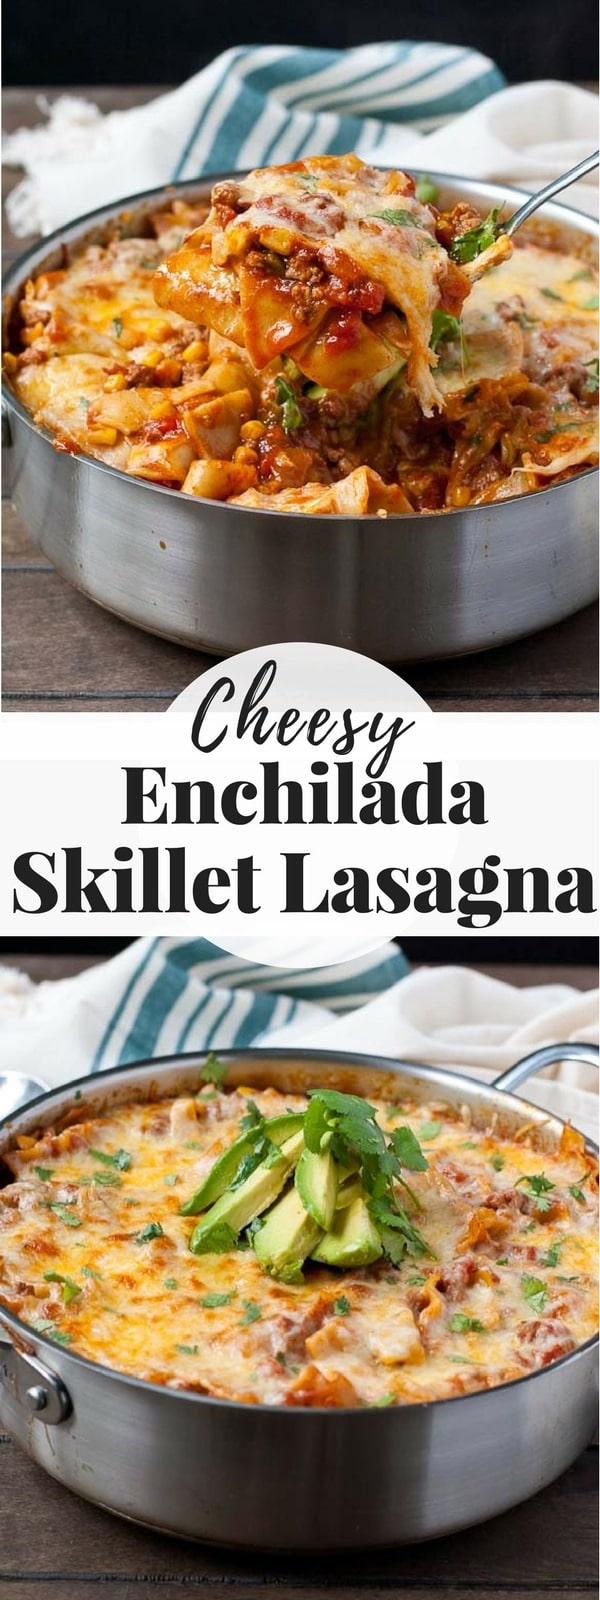 Enchilada Lasagna in a skillet with avocado slices